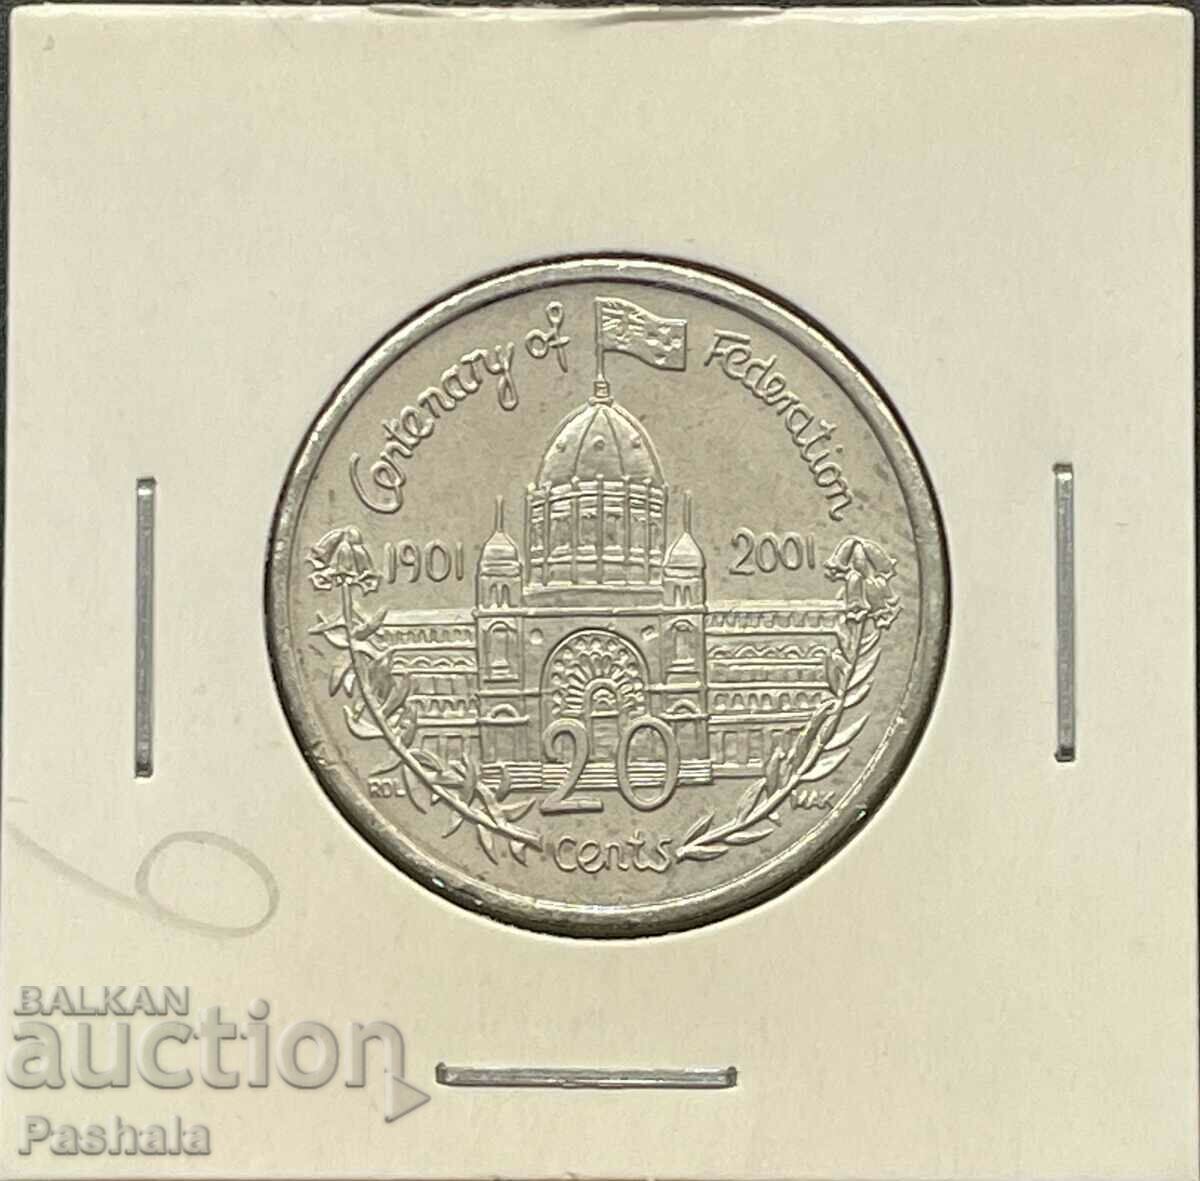 Αυστραλία 20 σεντς 2001